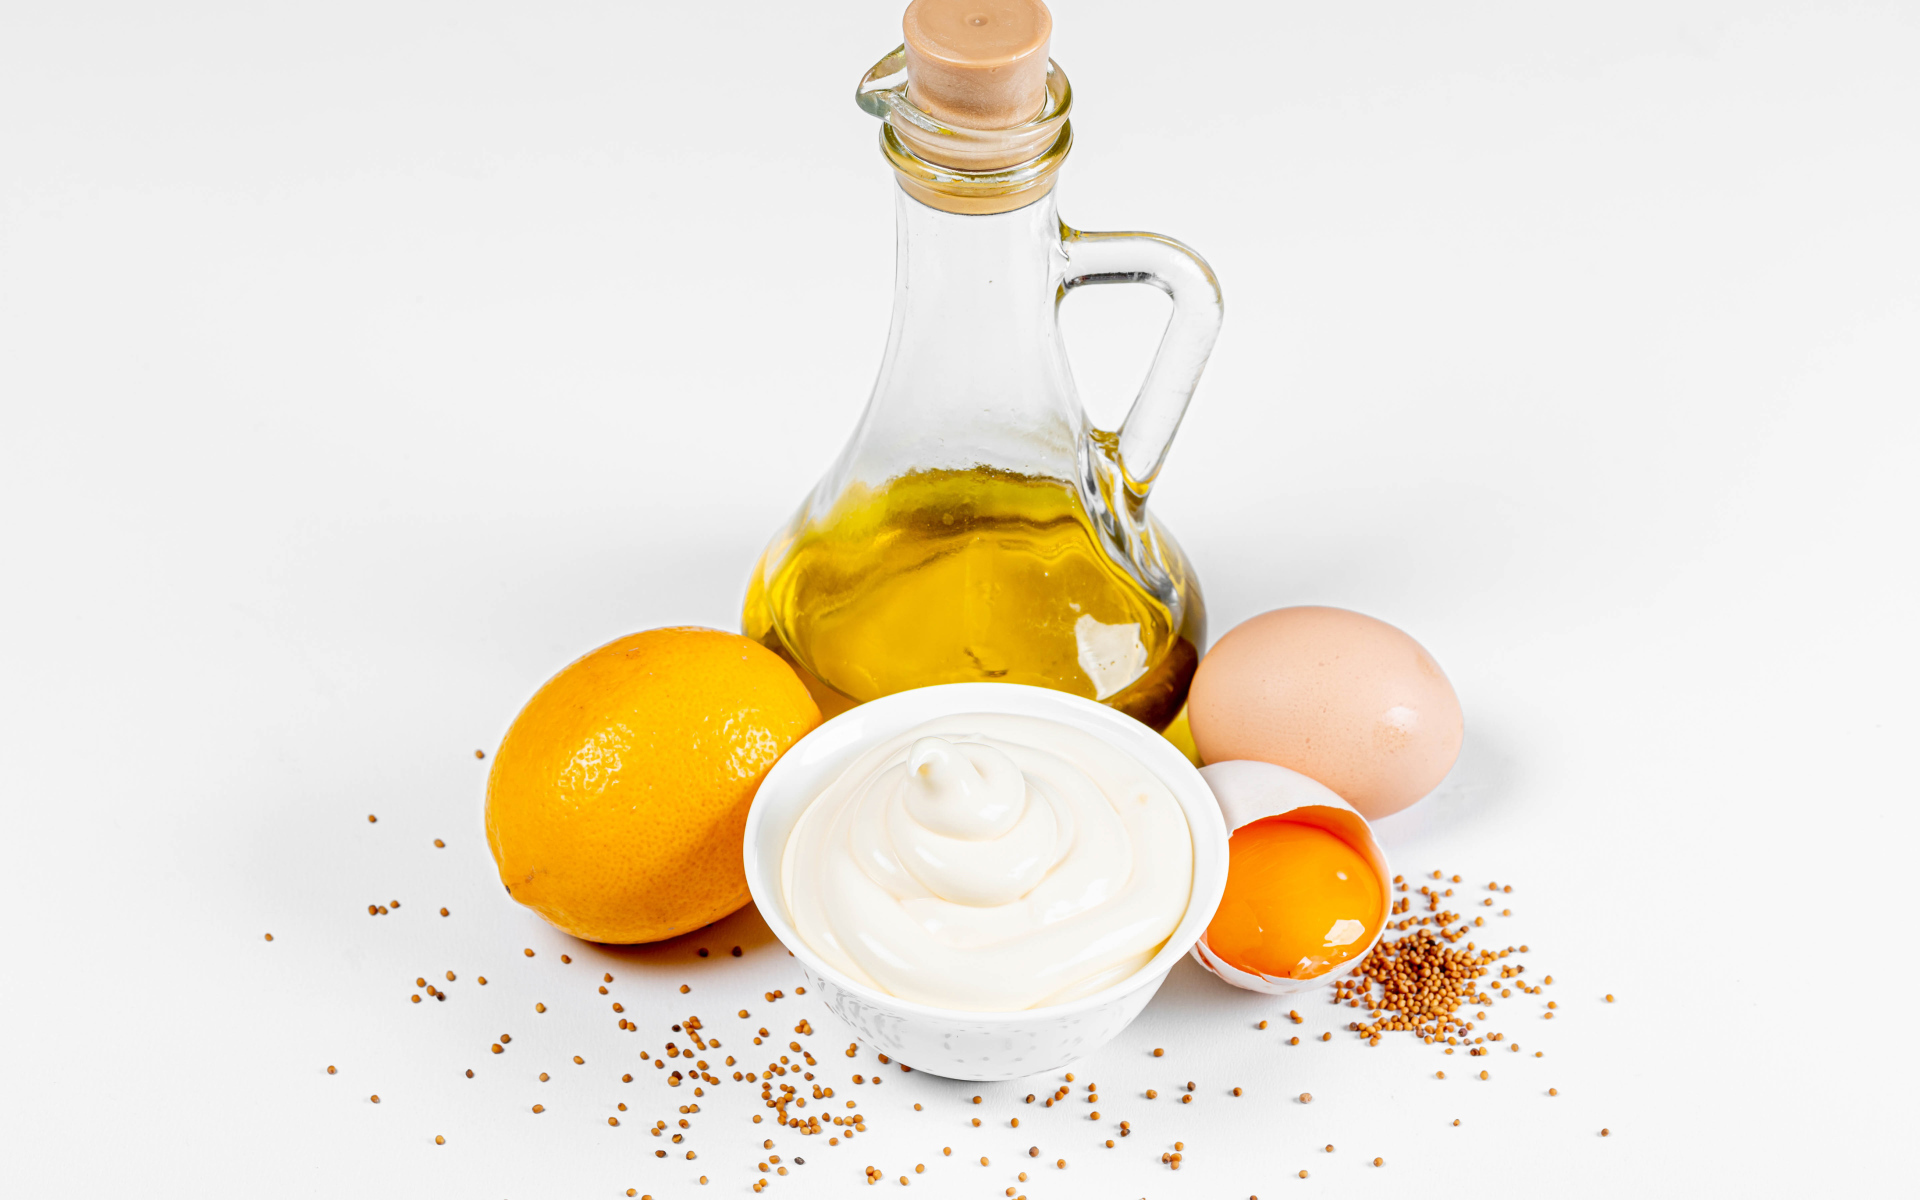 Оливковое масло, яйца и лимон на белом фоне с майонезом